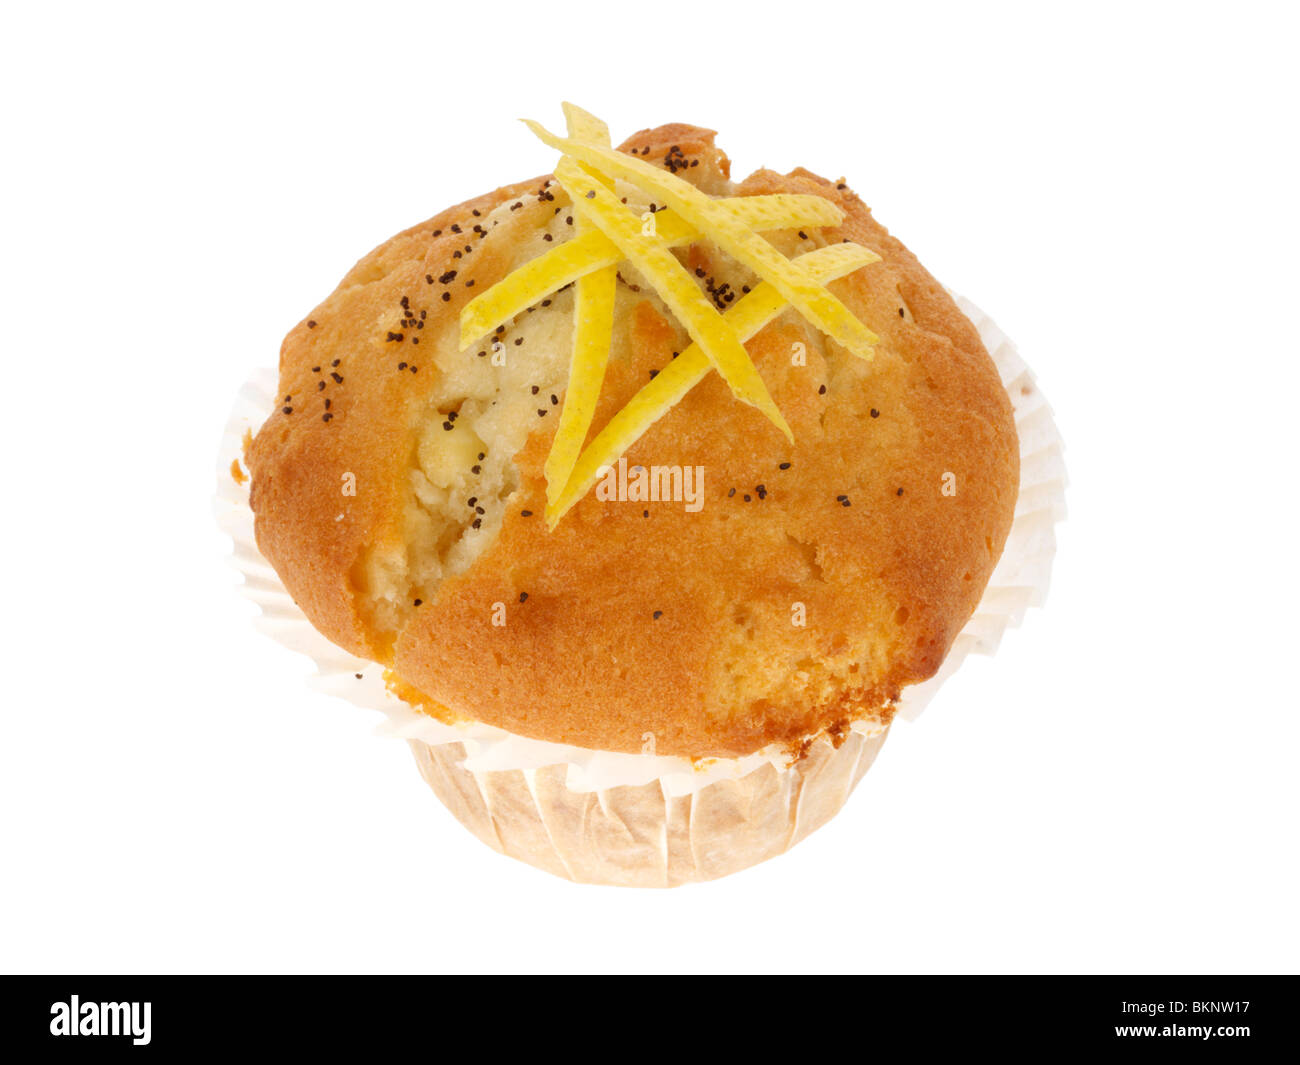 Les zestes de citron et les graines de pavot des muffins Banque D'Images